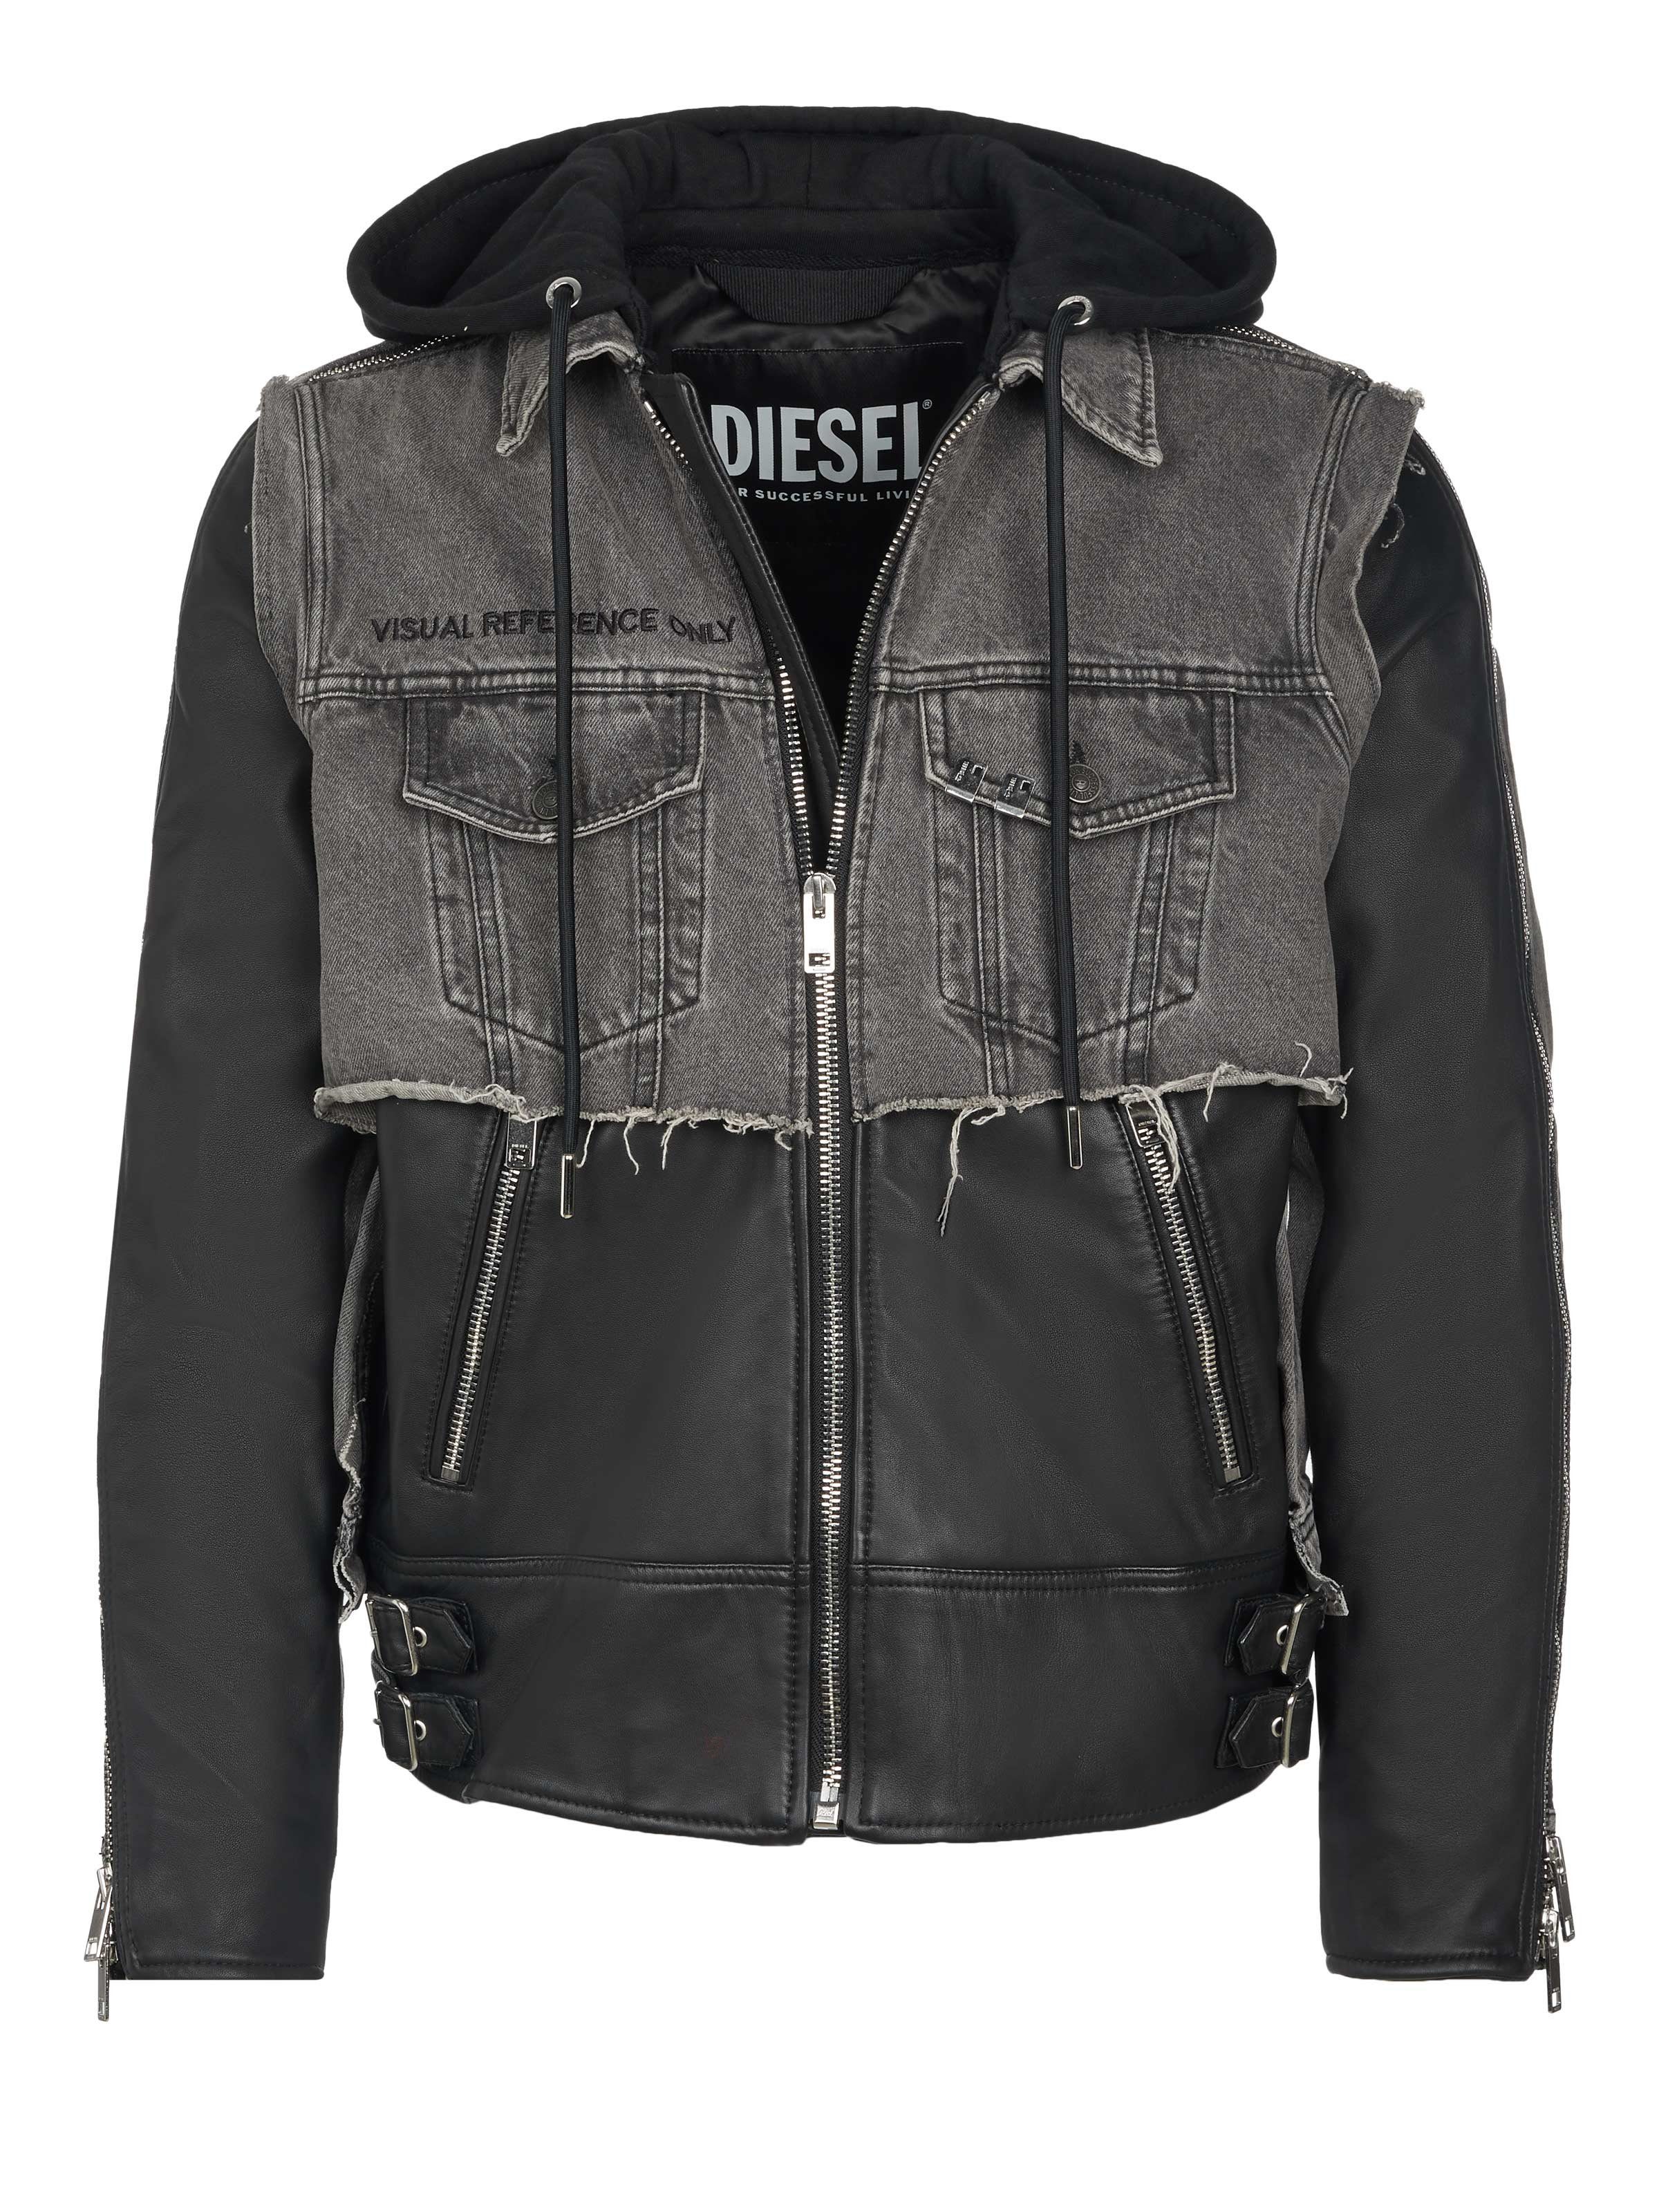 Diesel Lederjacke Diesel Jacke schwarz-grau